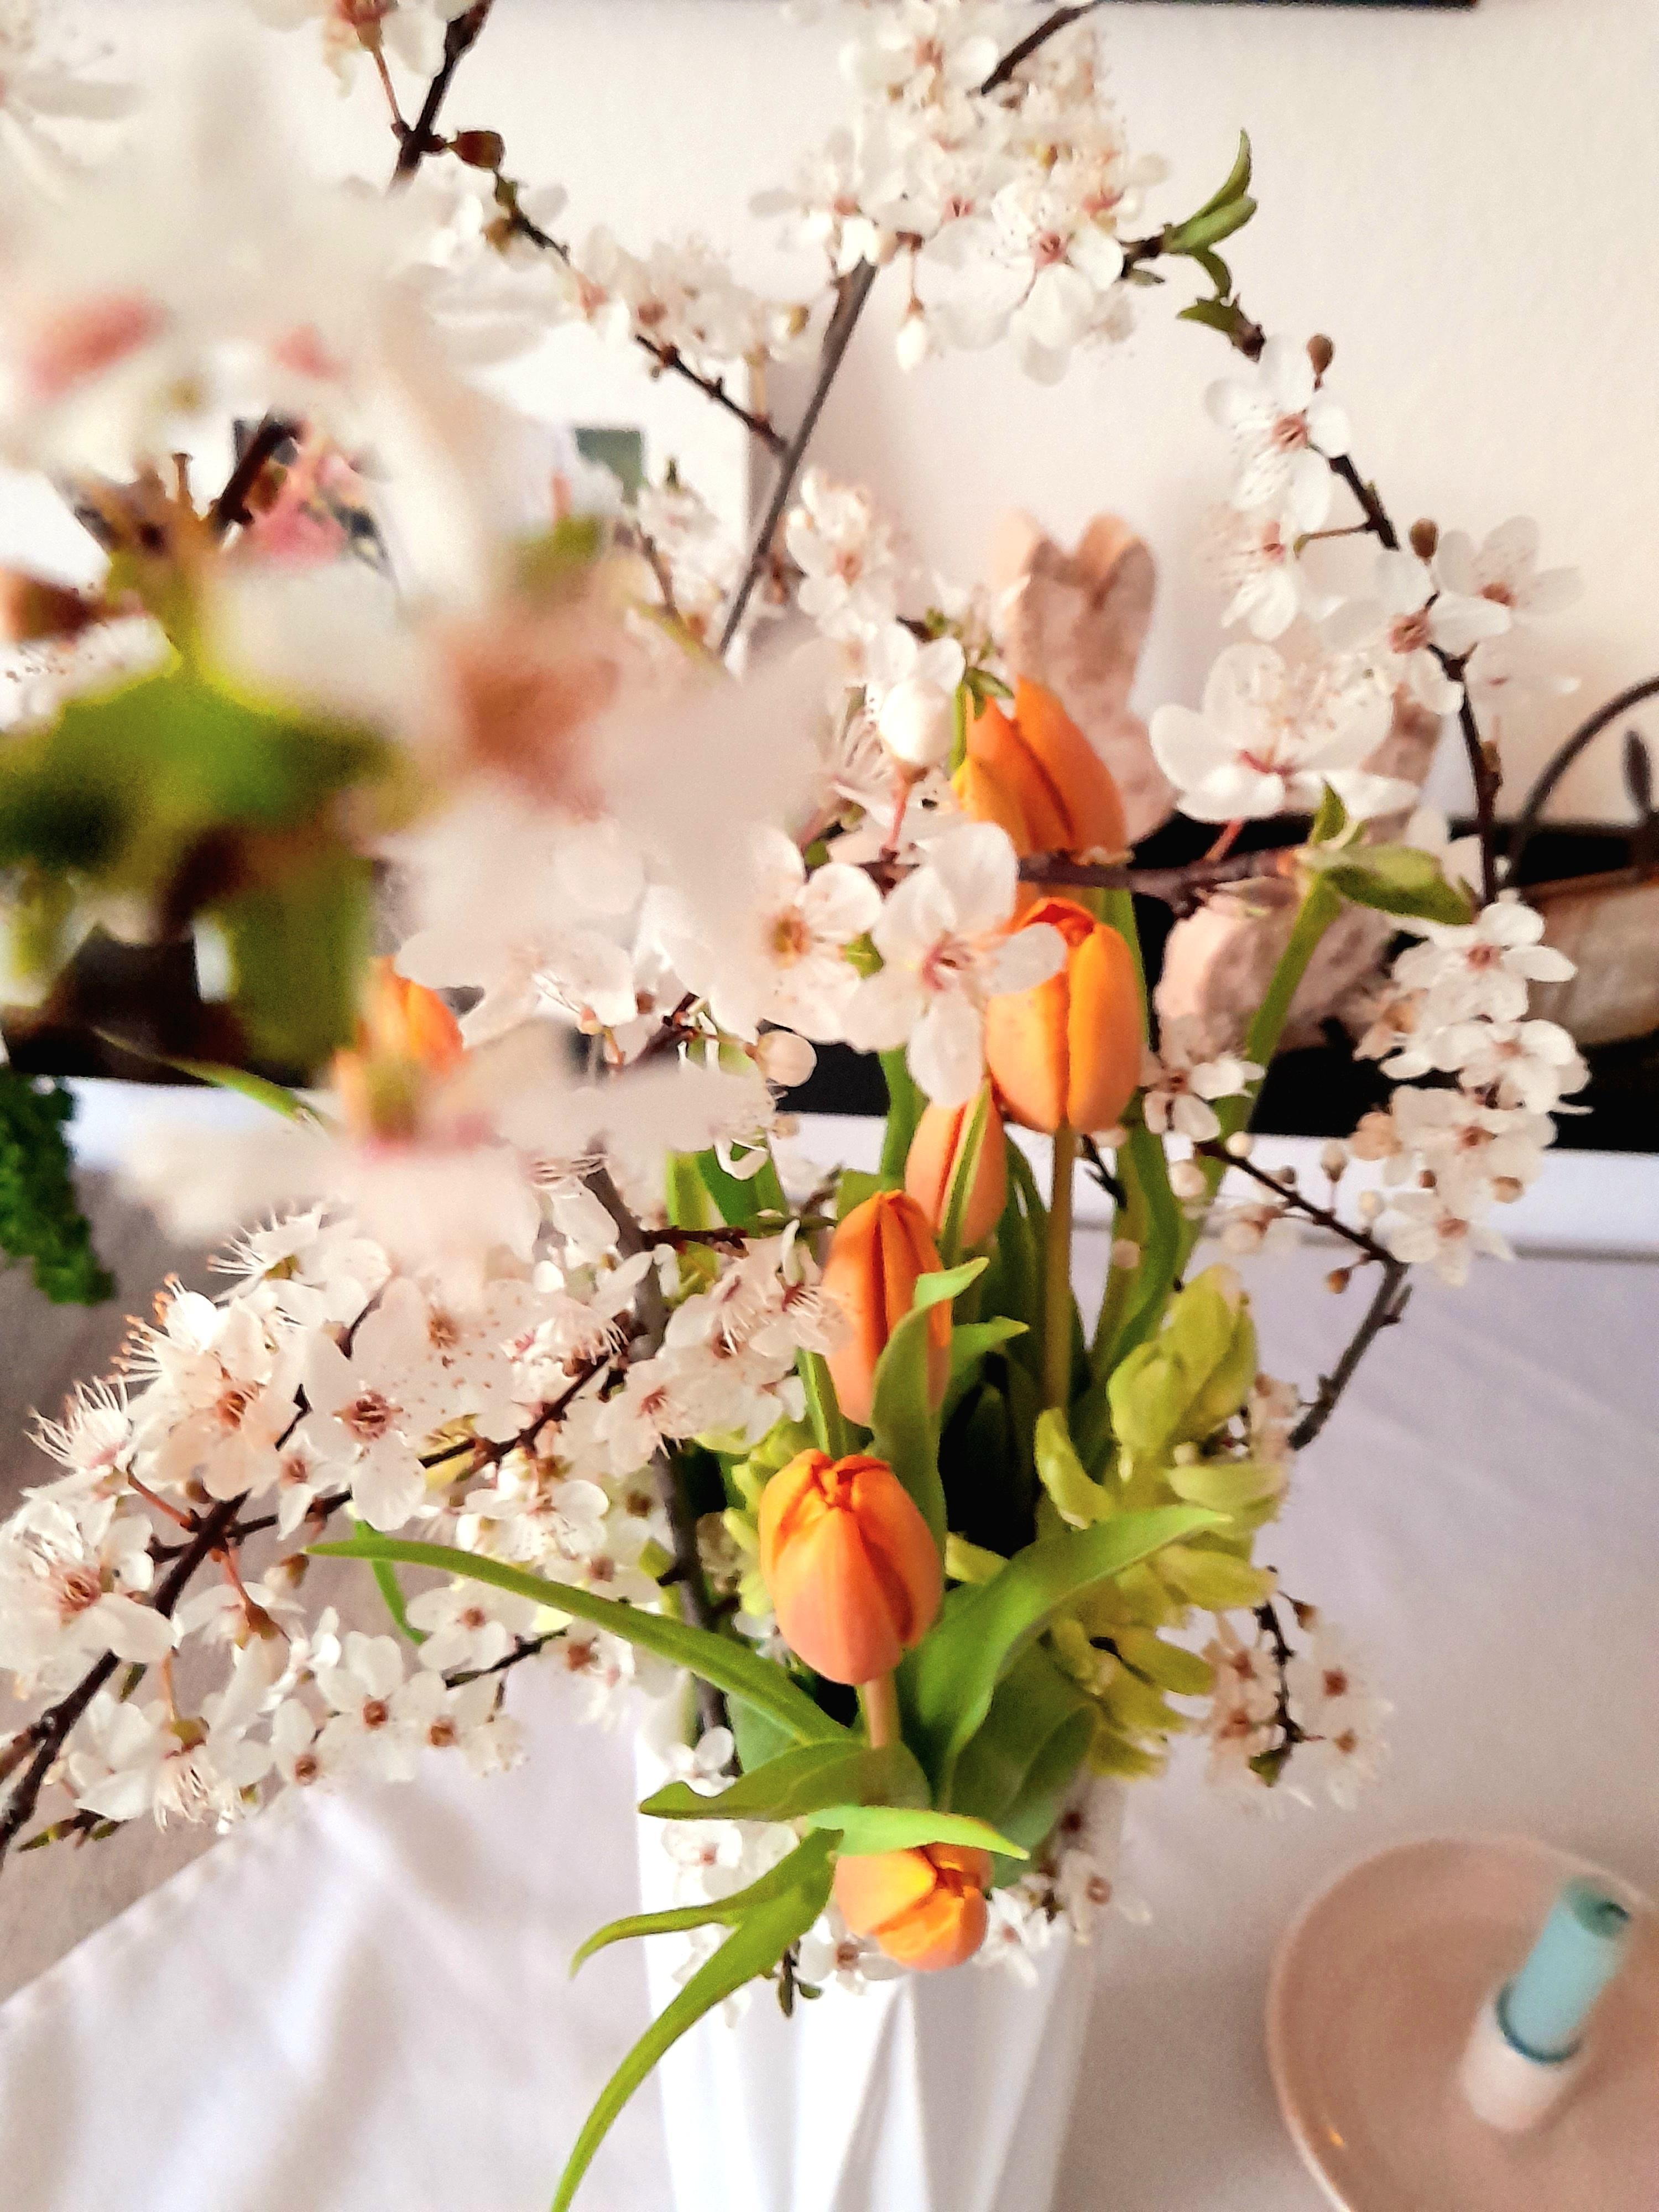 Sonntag Frühling in der Vase 🧡
#flower #blüte #vase #spring #küchentisch #zweig #tischdecke #kerze 